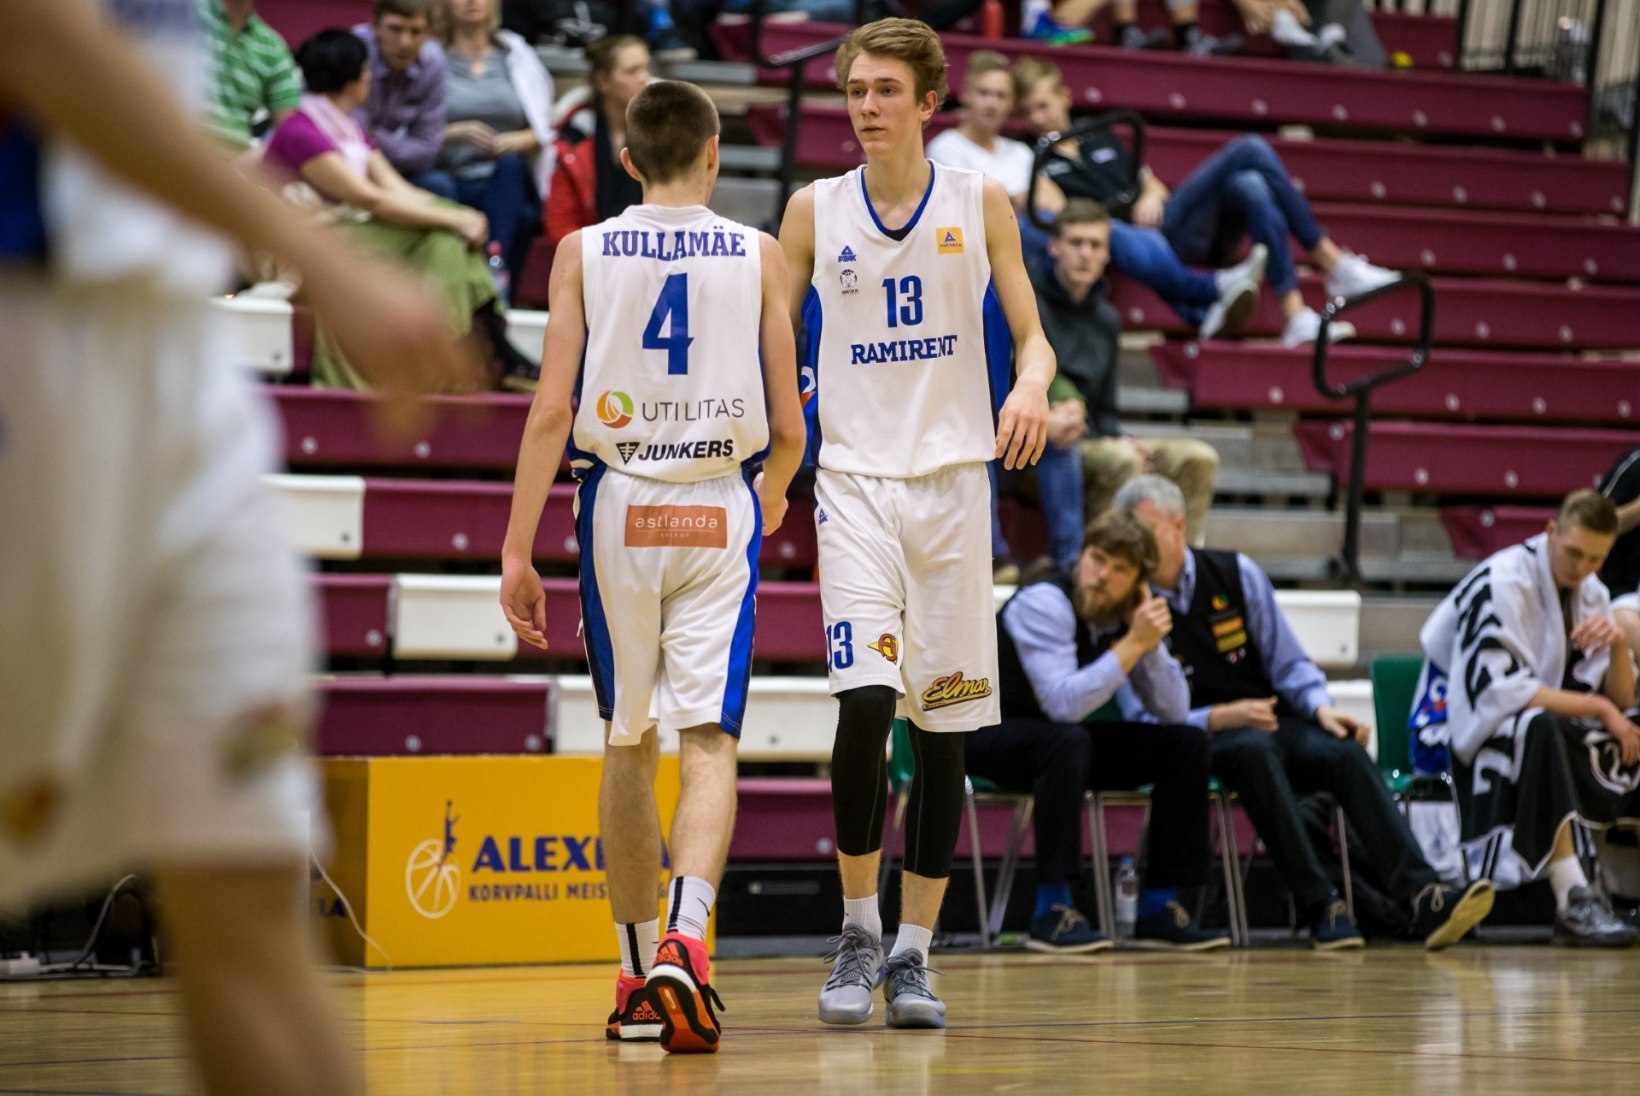 VÄGA HEA! Noormeeste korvpalli Euroopa meistrivõistlused toimuvad tuleval suvel Eestis